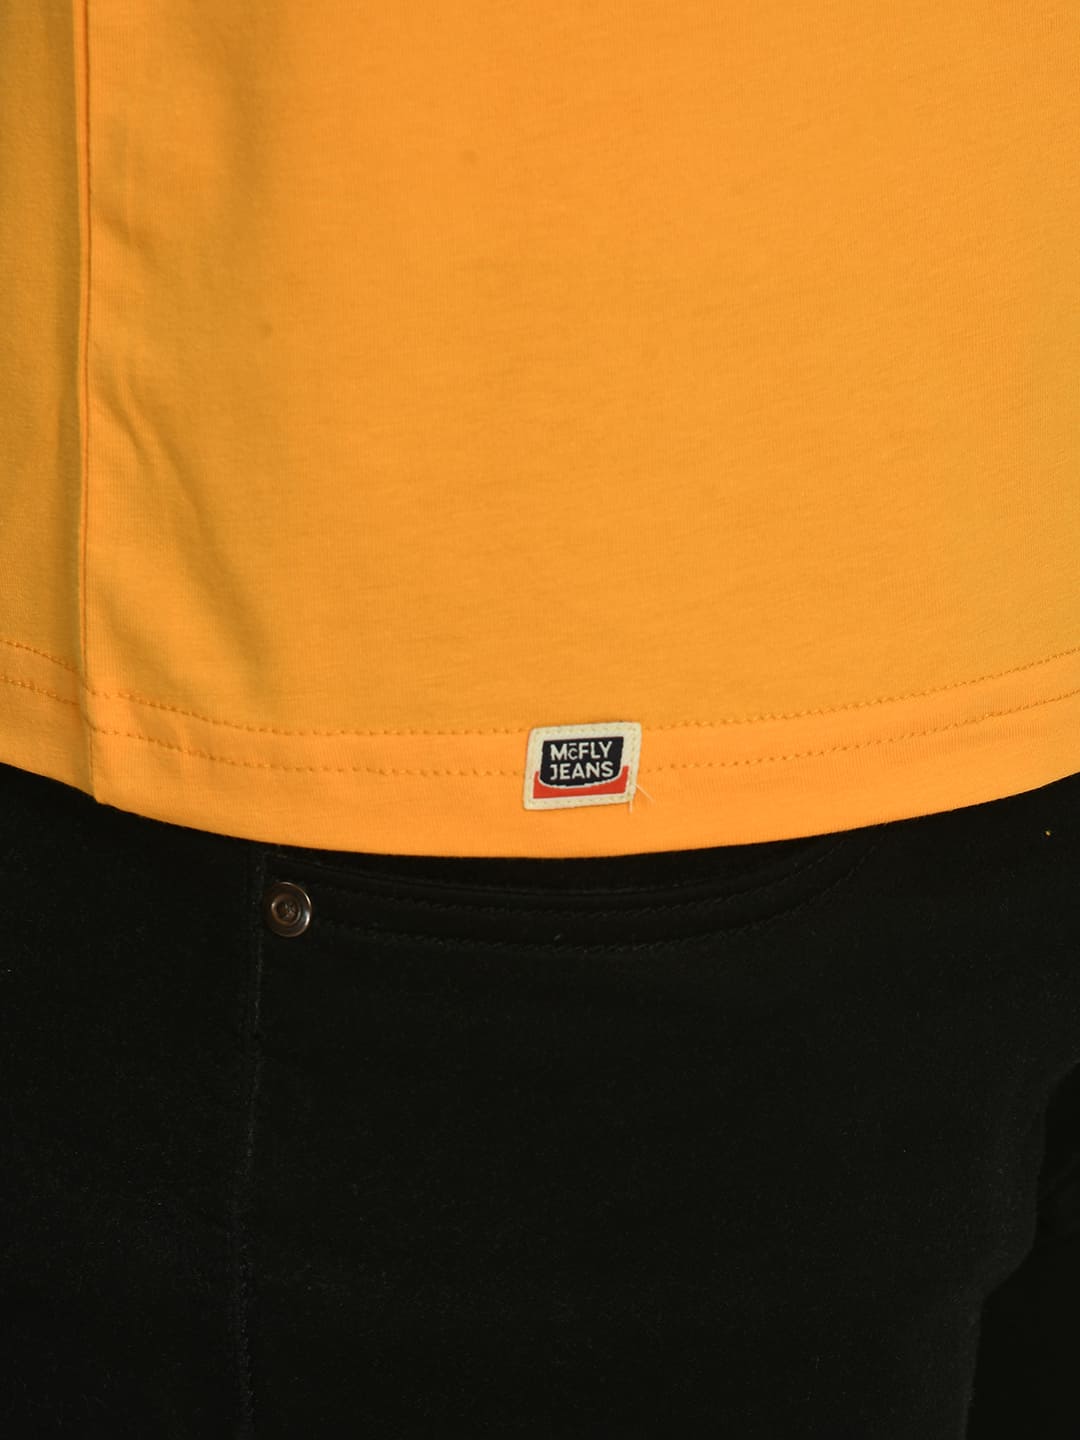 Mustard Yellow Crew Neck T-Shirt